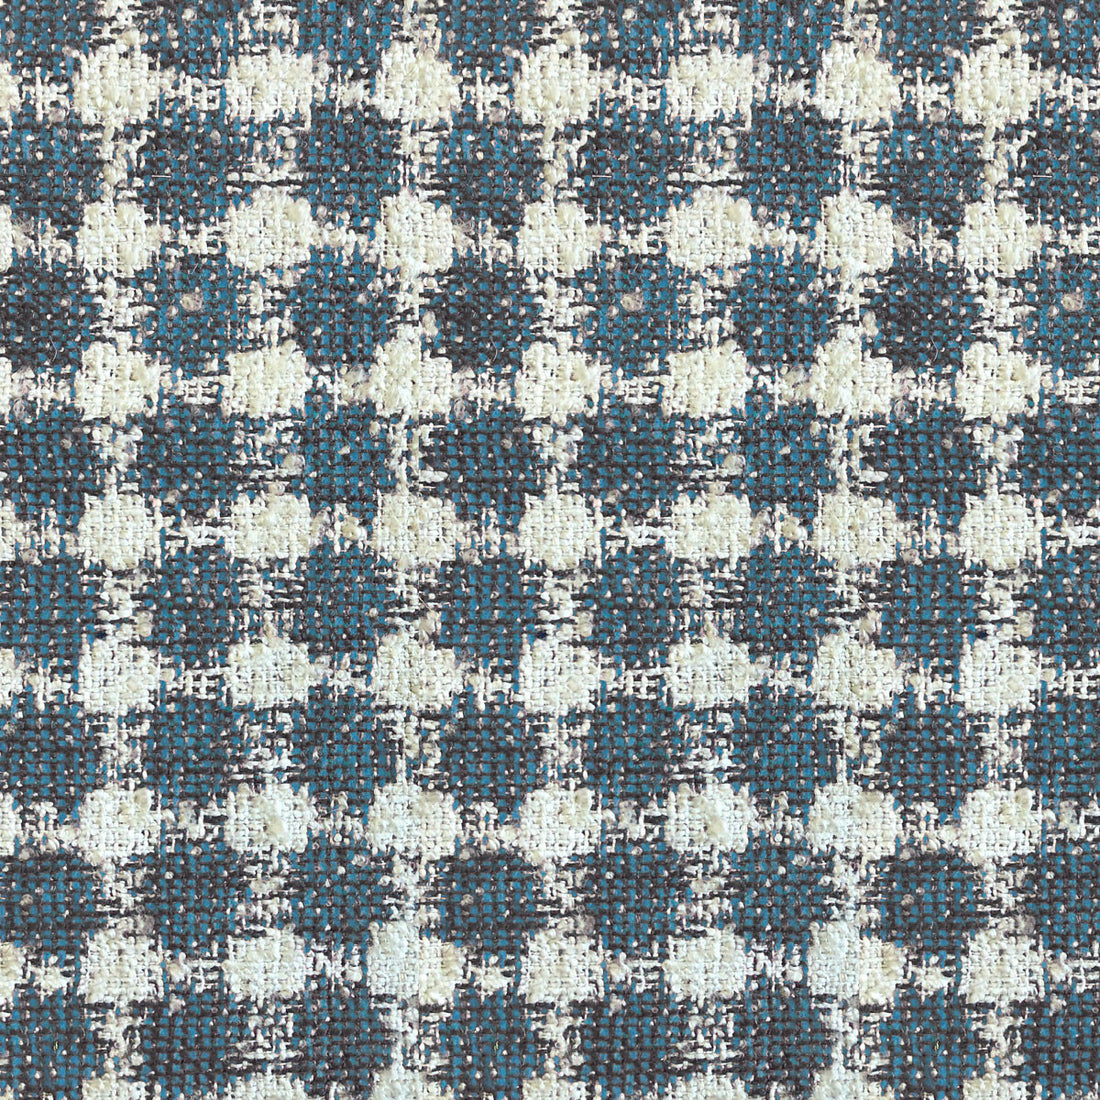 Pedraza fabric in azul color - pattern LCT1050.001.0 - by Gaston y Daniela in the Lorenzo Castillo VI collection